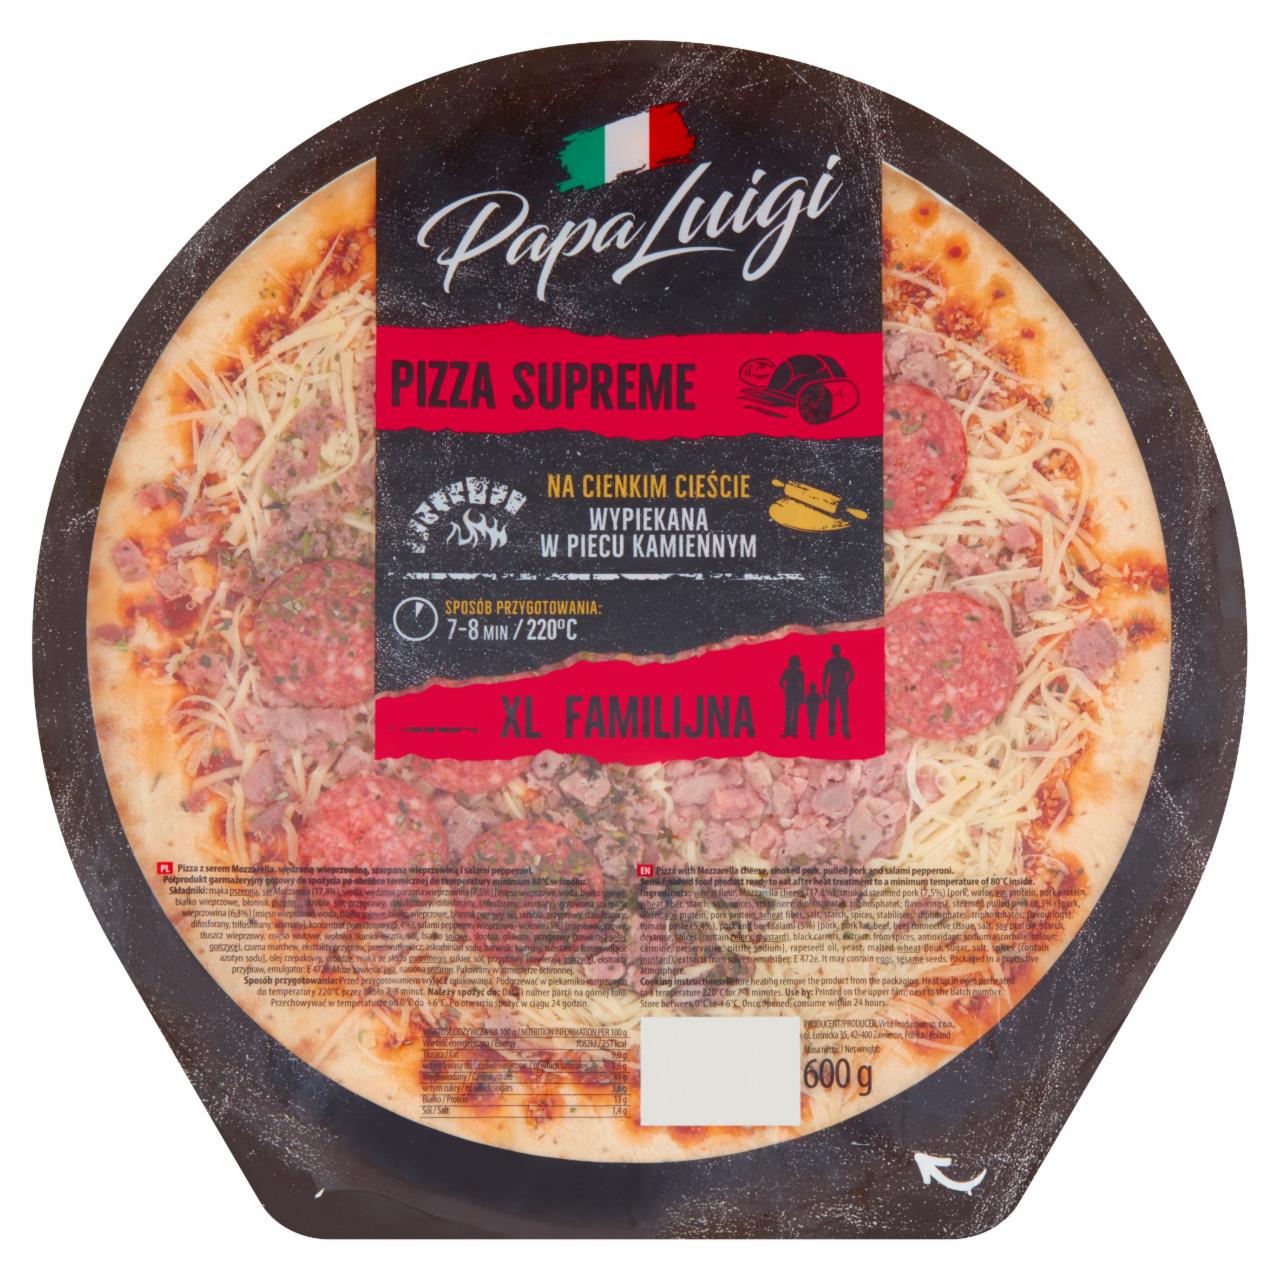 Zdjęcia - Papa Luigi Pizza supreme 600 g